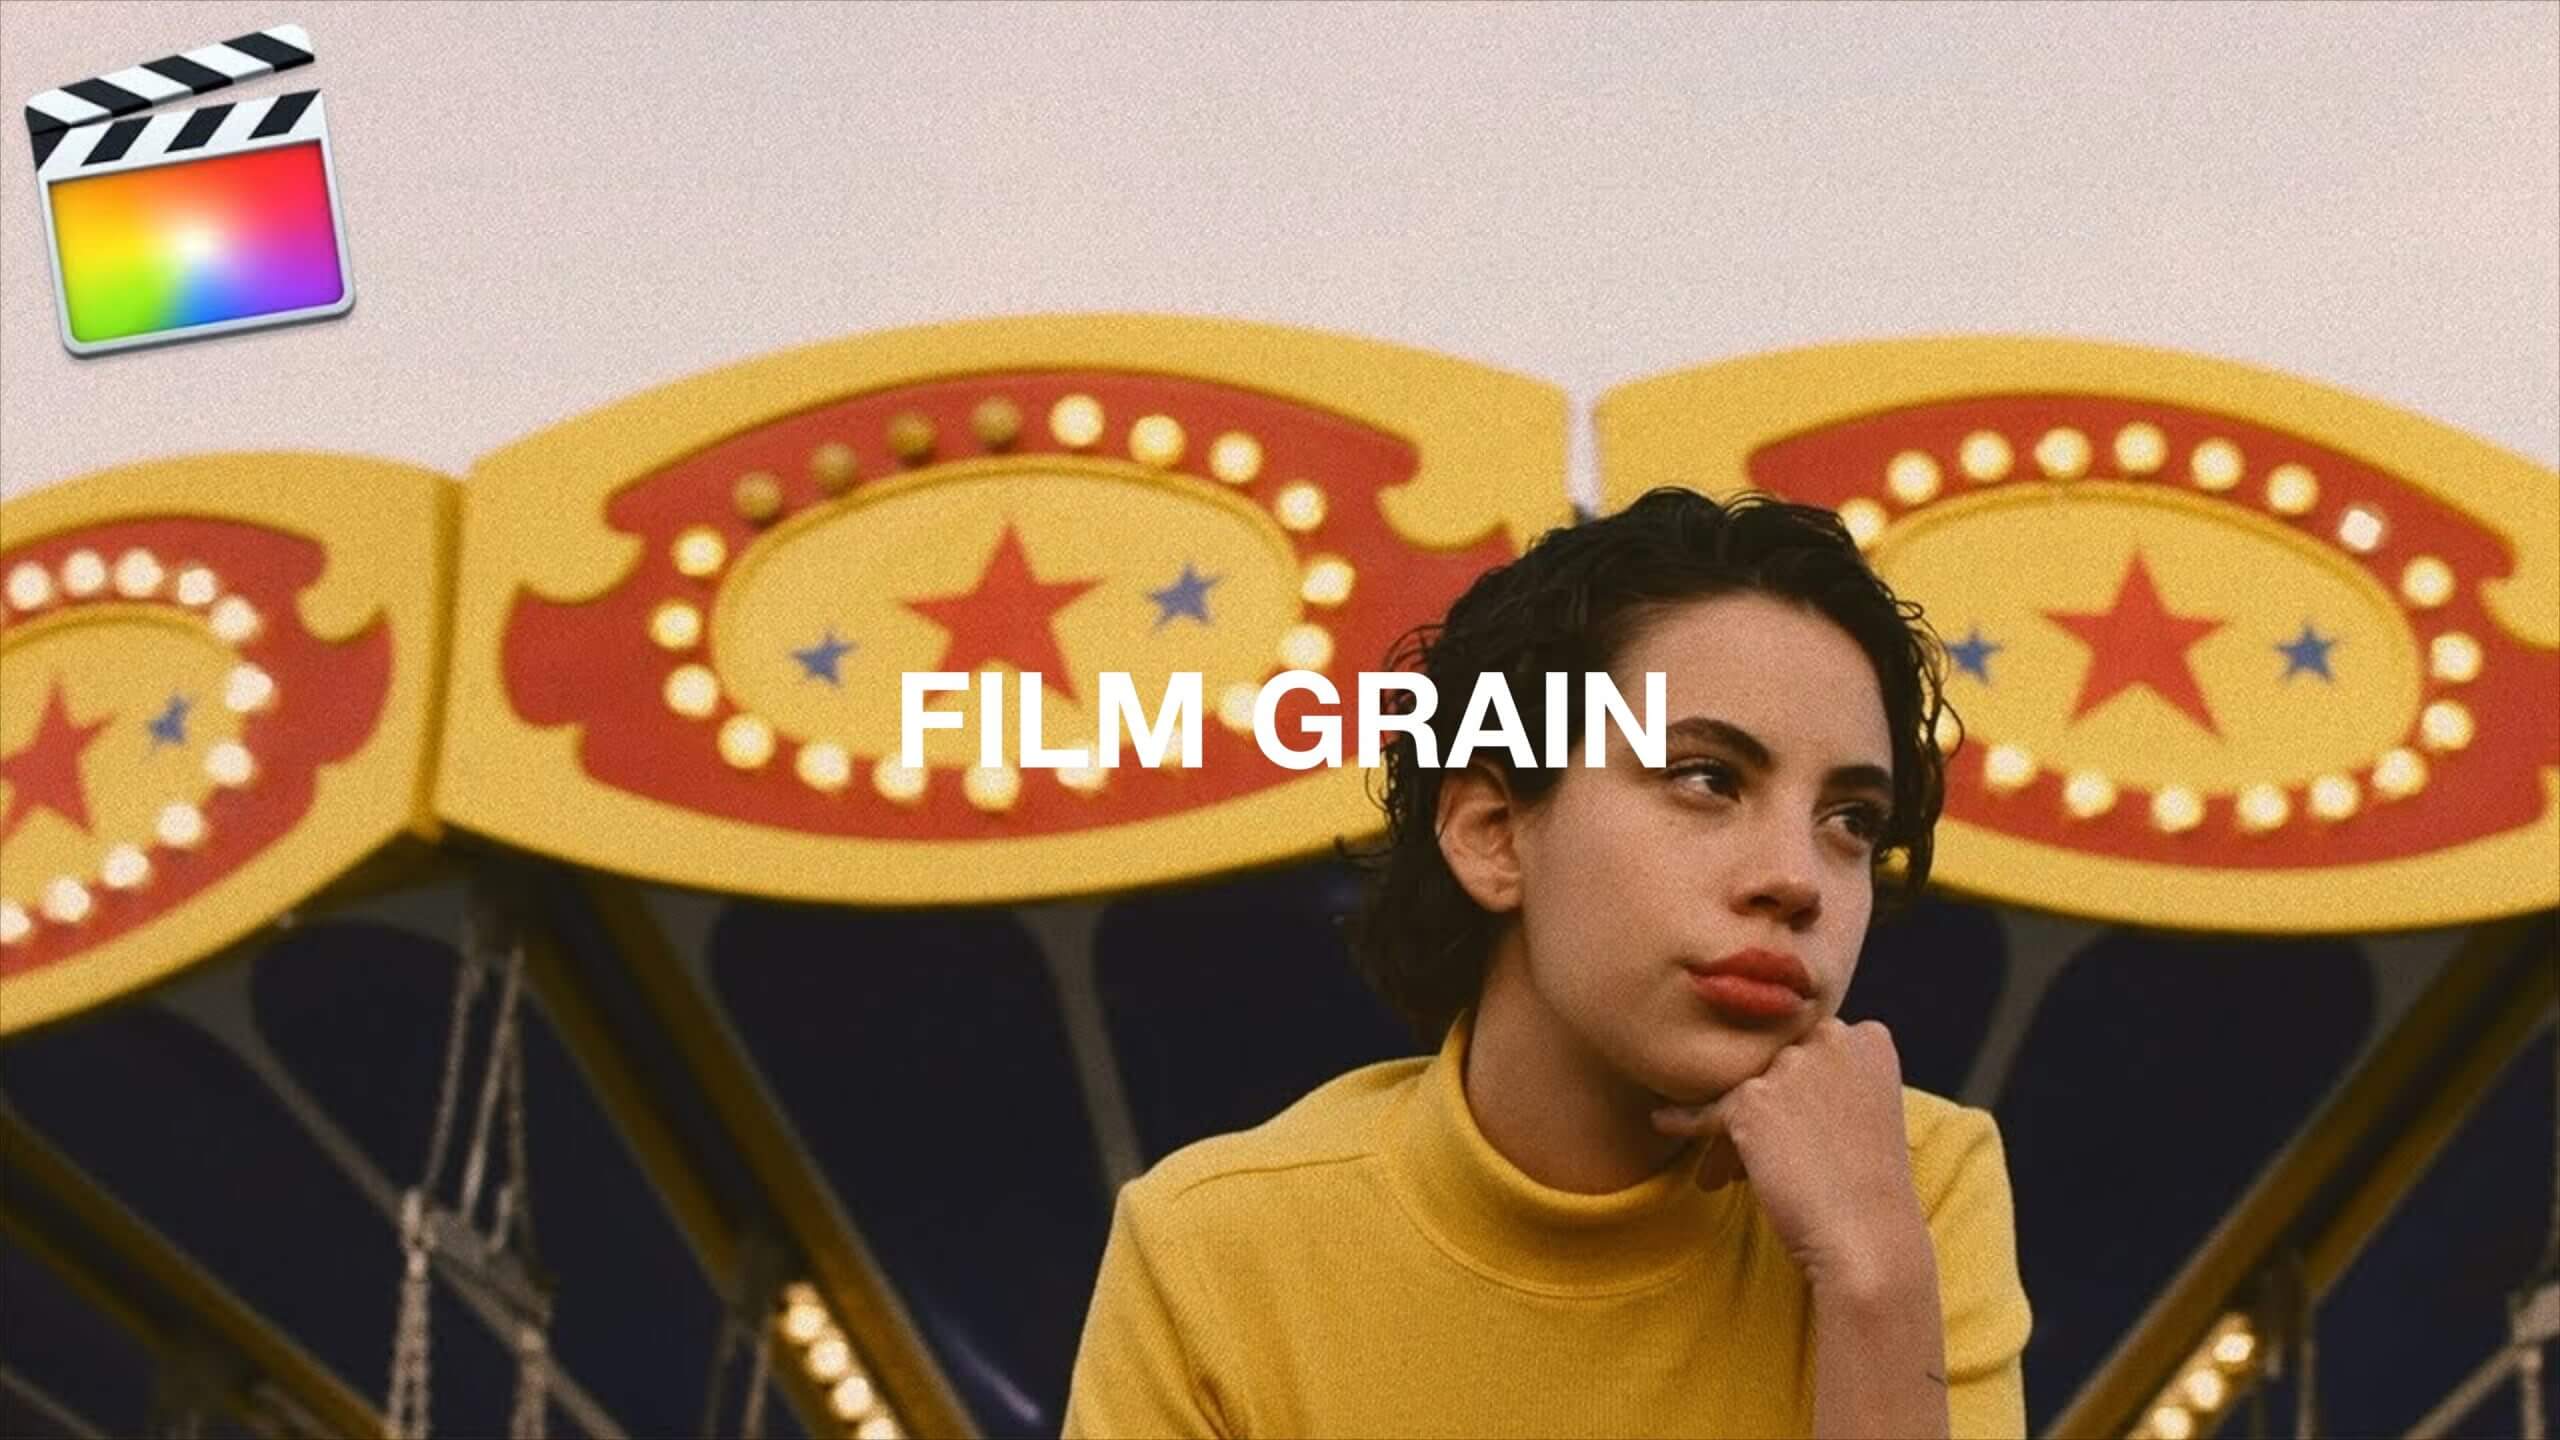 Final Cut Pro X 映像を「フィルムグレイン」でレトロ風にする方法